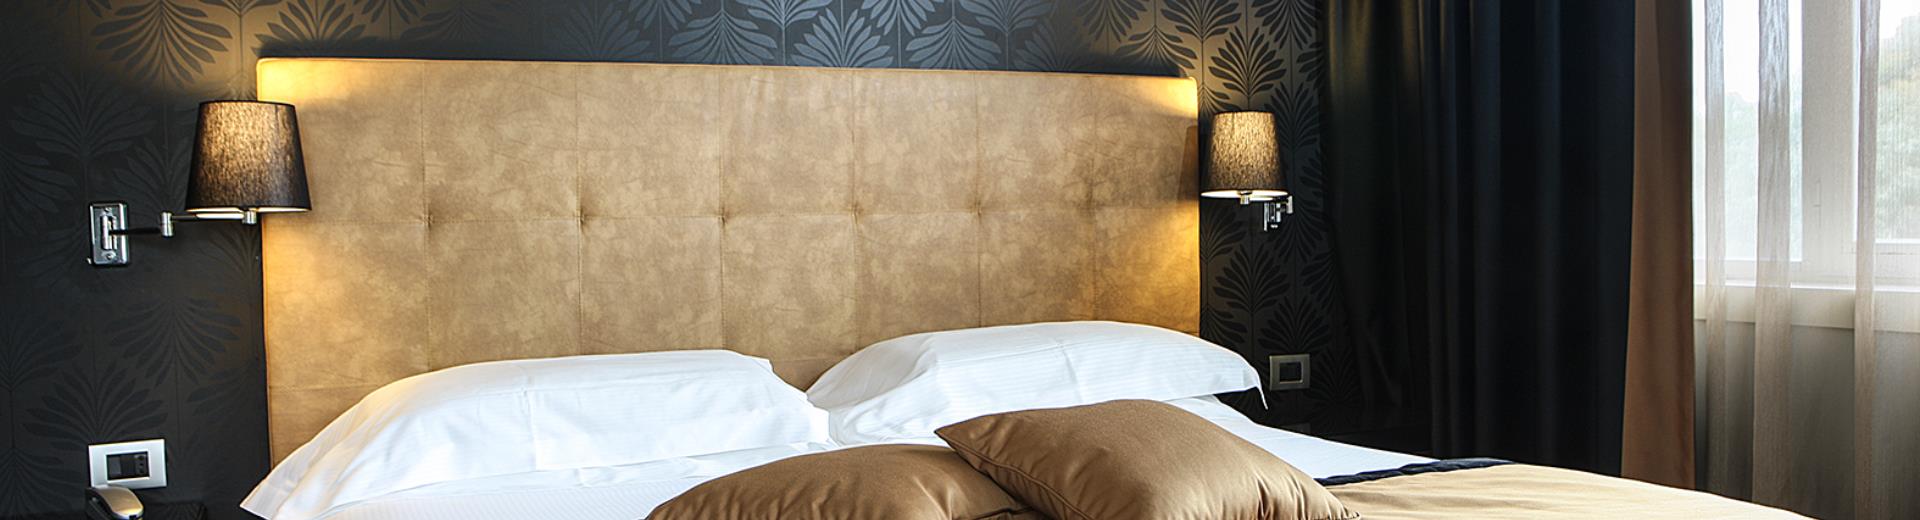 Best Western Hotel JFK Napoli - comfort e praticità nelle camere comfort